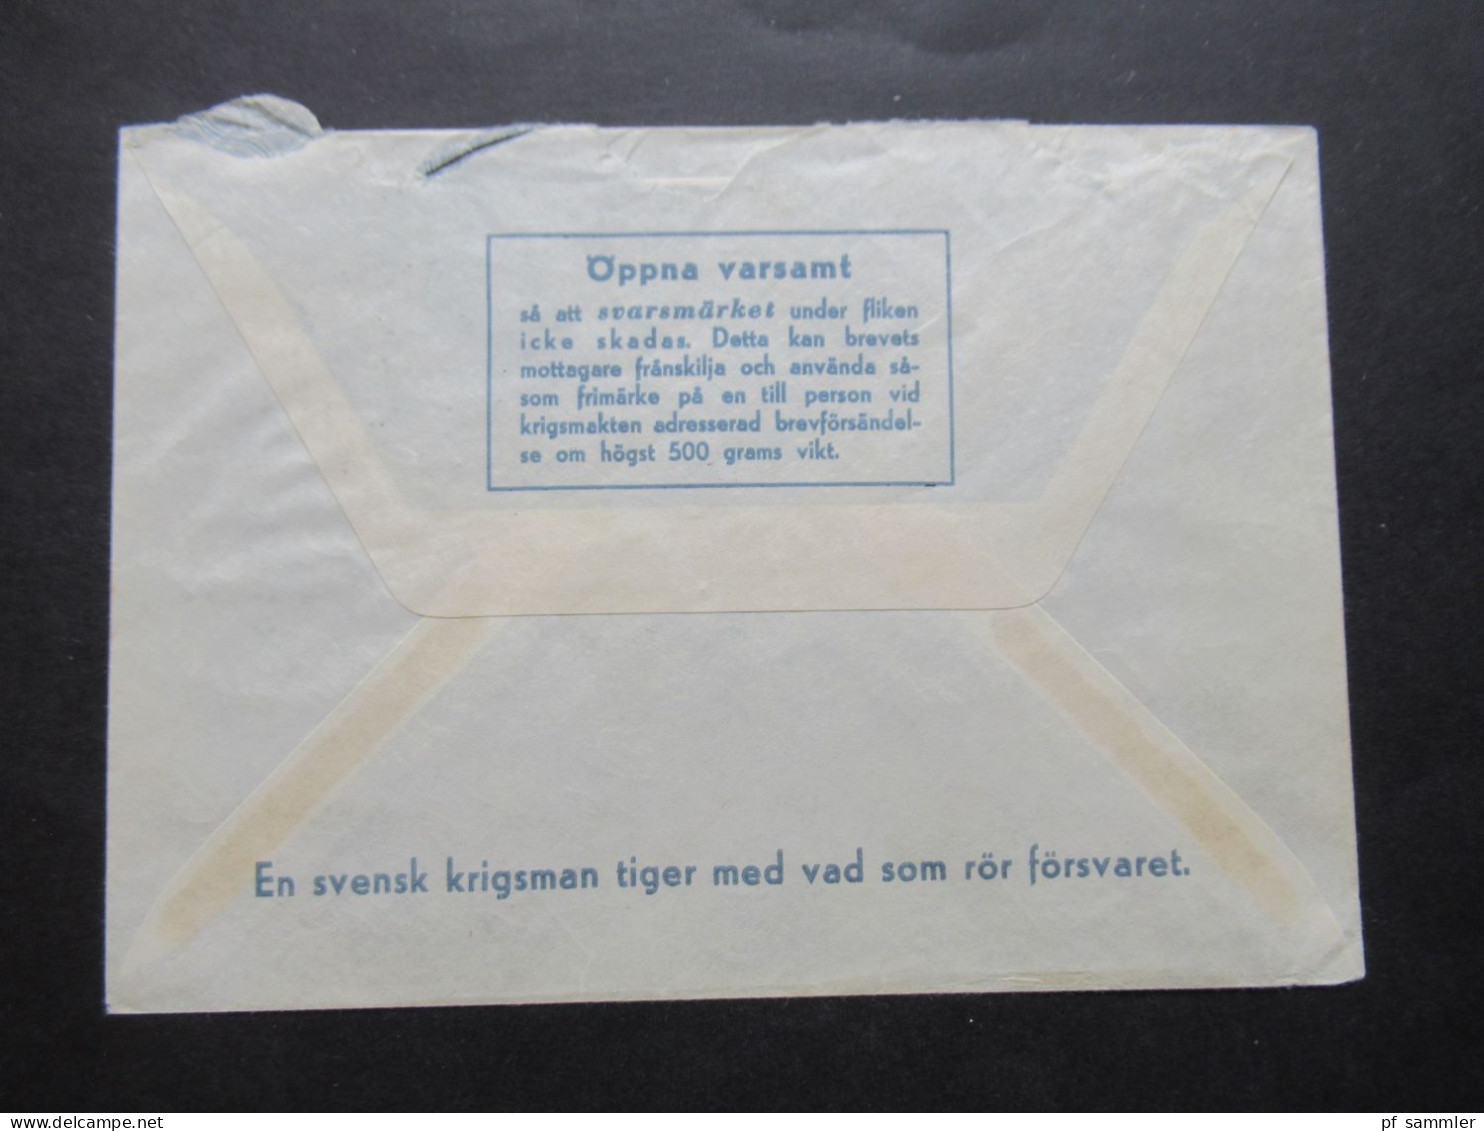 1966 Schweden Militärpost Militärbrev Stempel Svenska FN Bat Cypern / Schwedisches Militär Auf Zypern / FN Bat STR Komp - Militärmarken